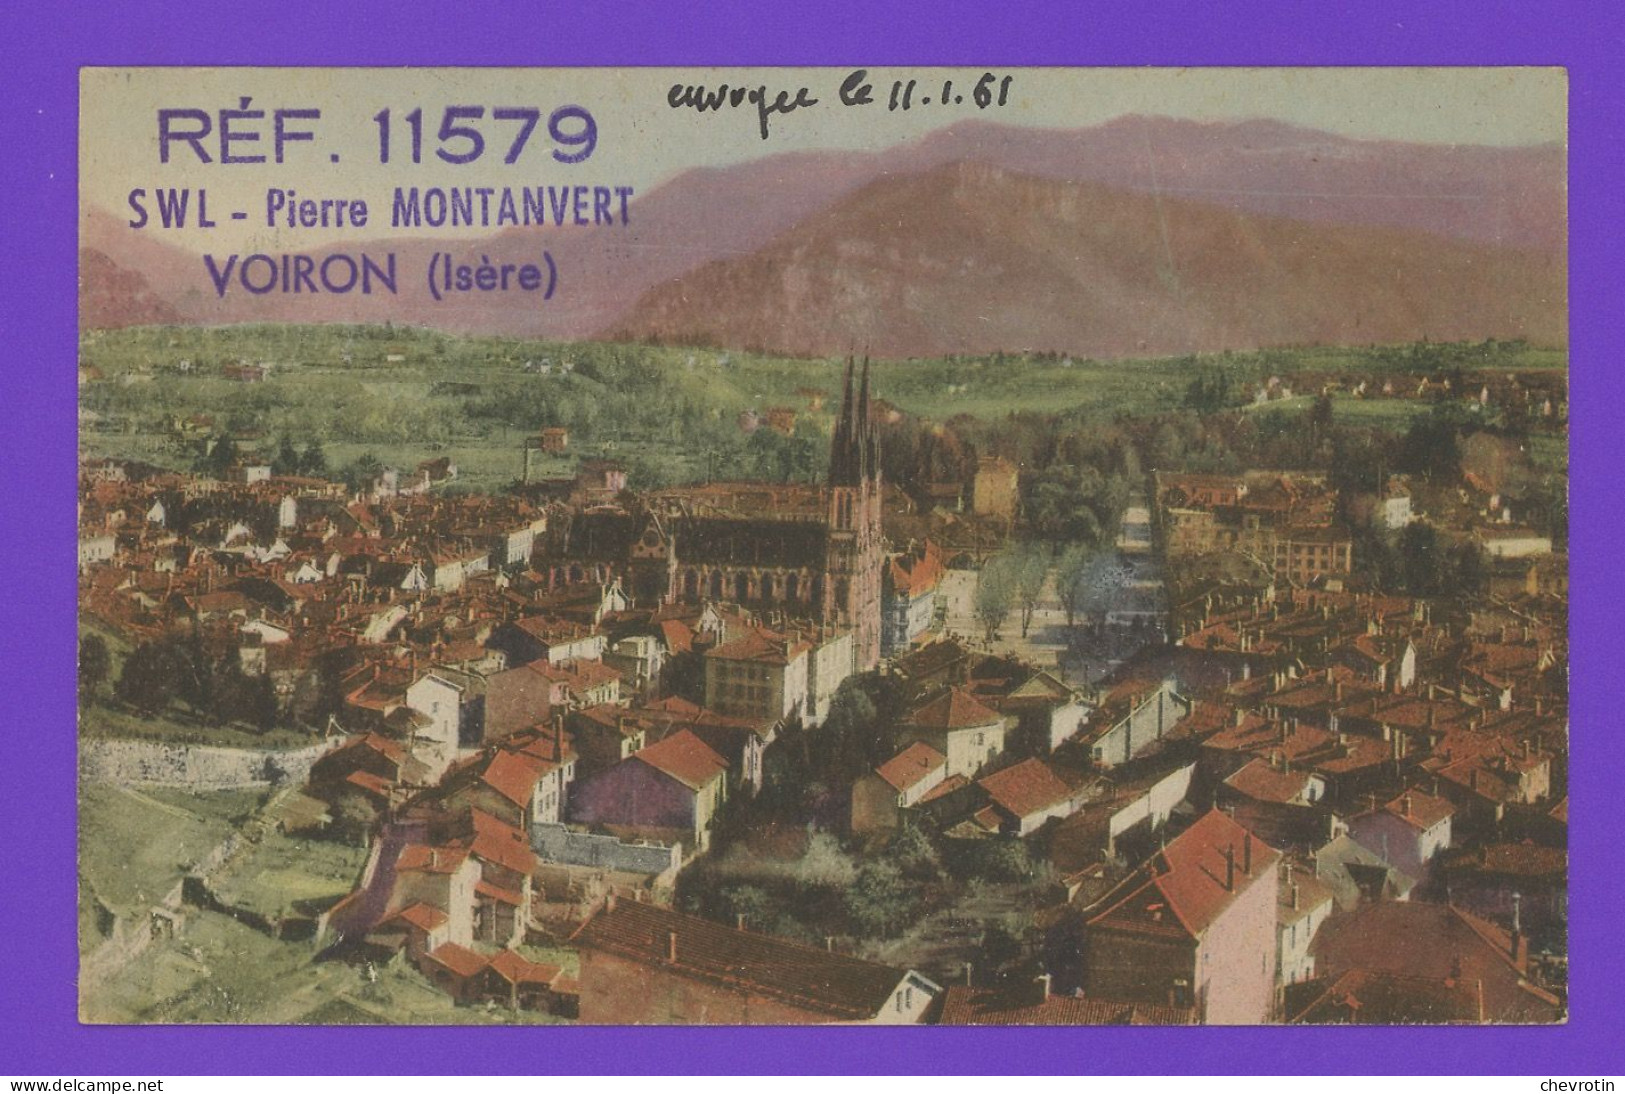 Carte Postale Avec Coordonnées Radio Postée à Voiron. Réf. 11579 SWL Pierre Montanvert. - Radios